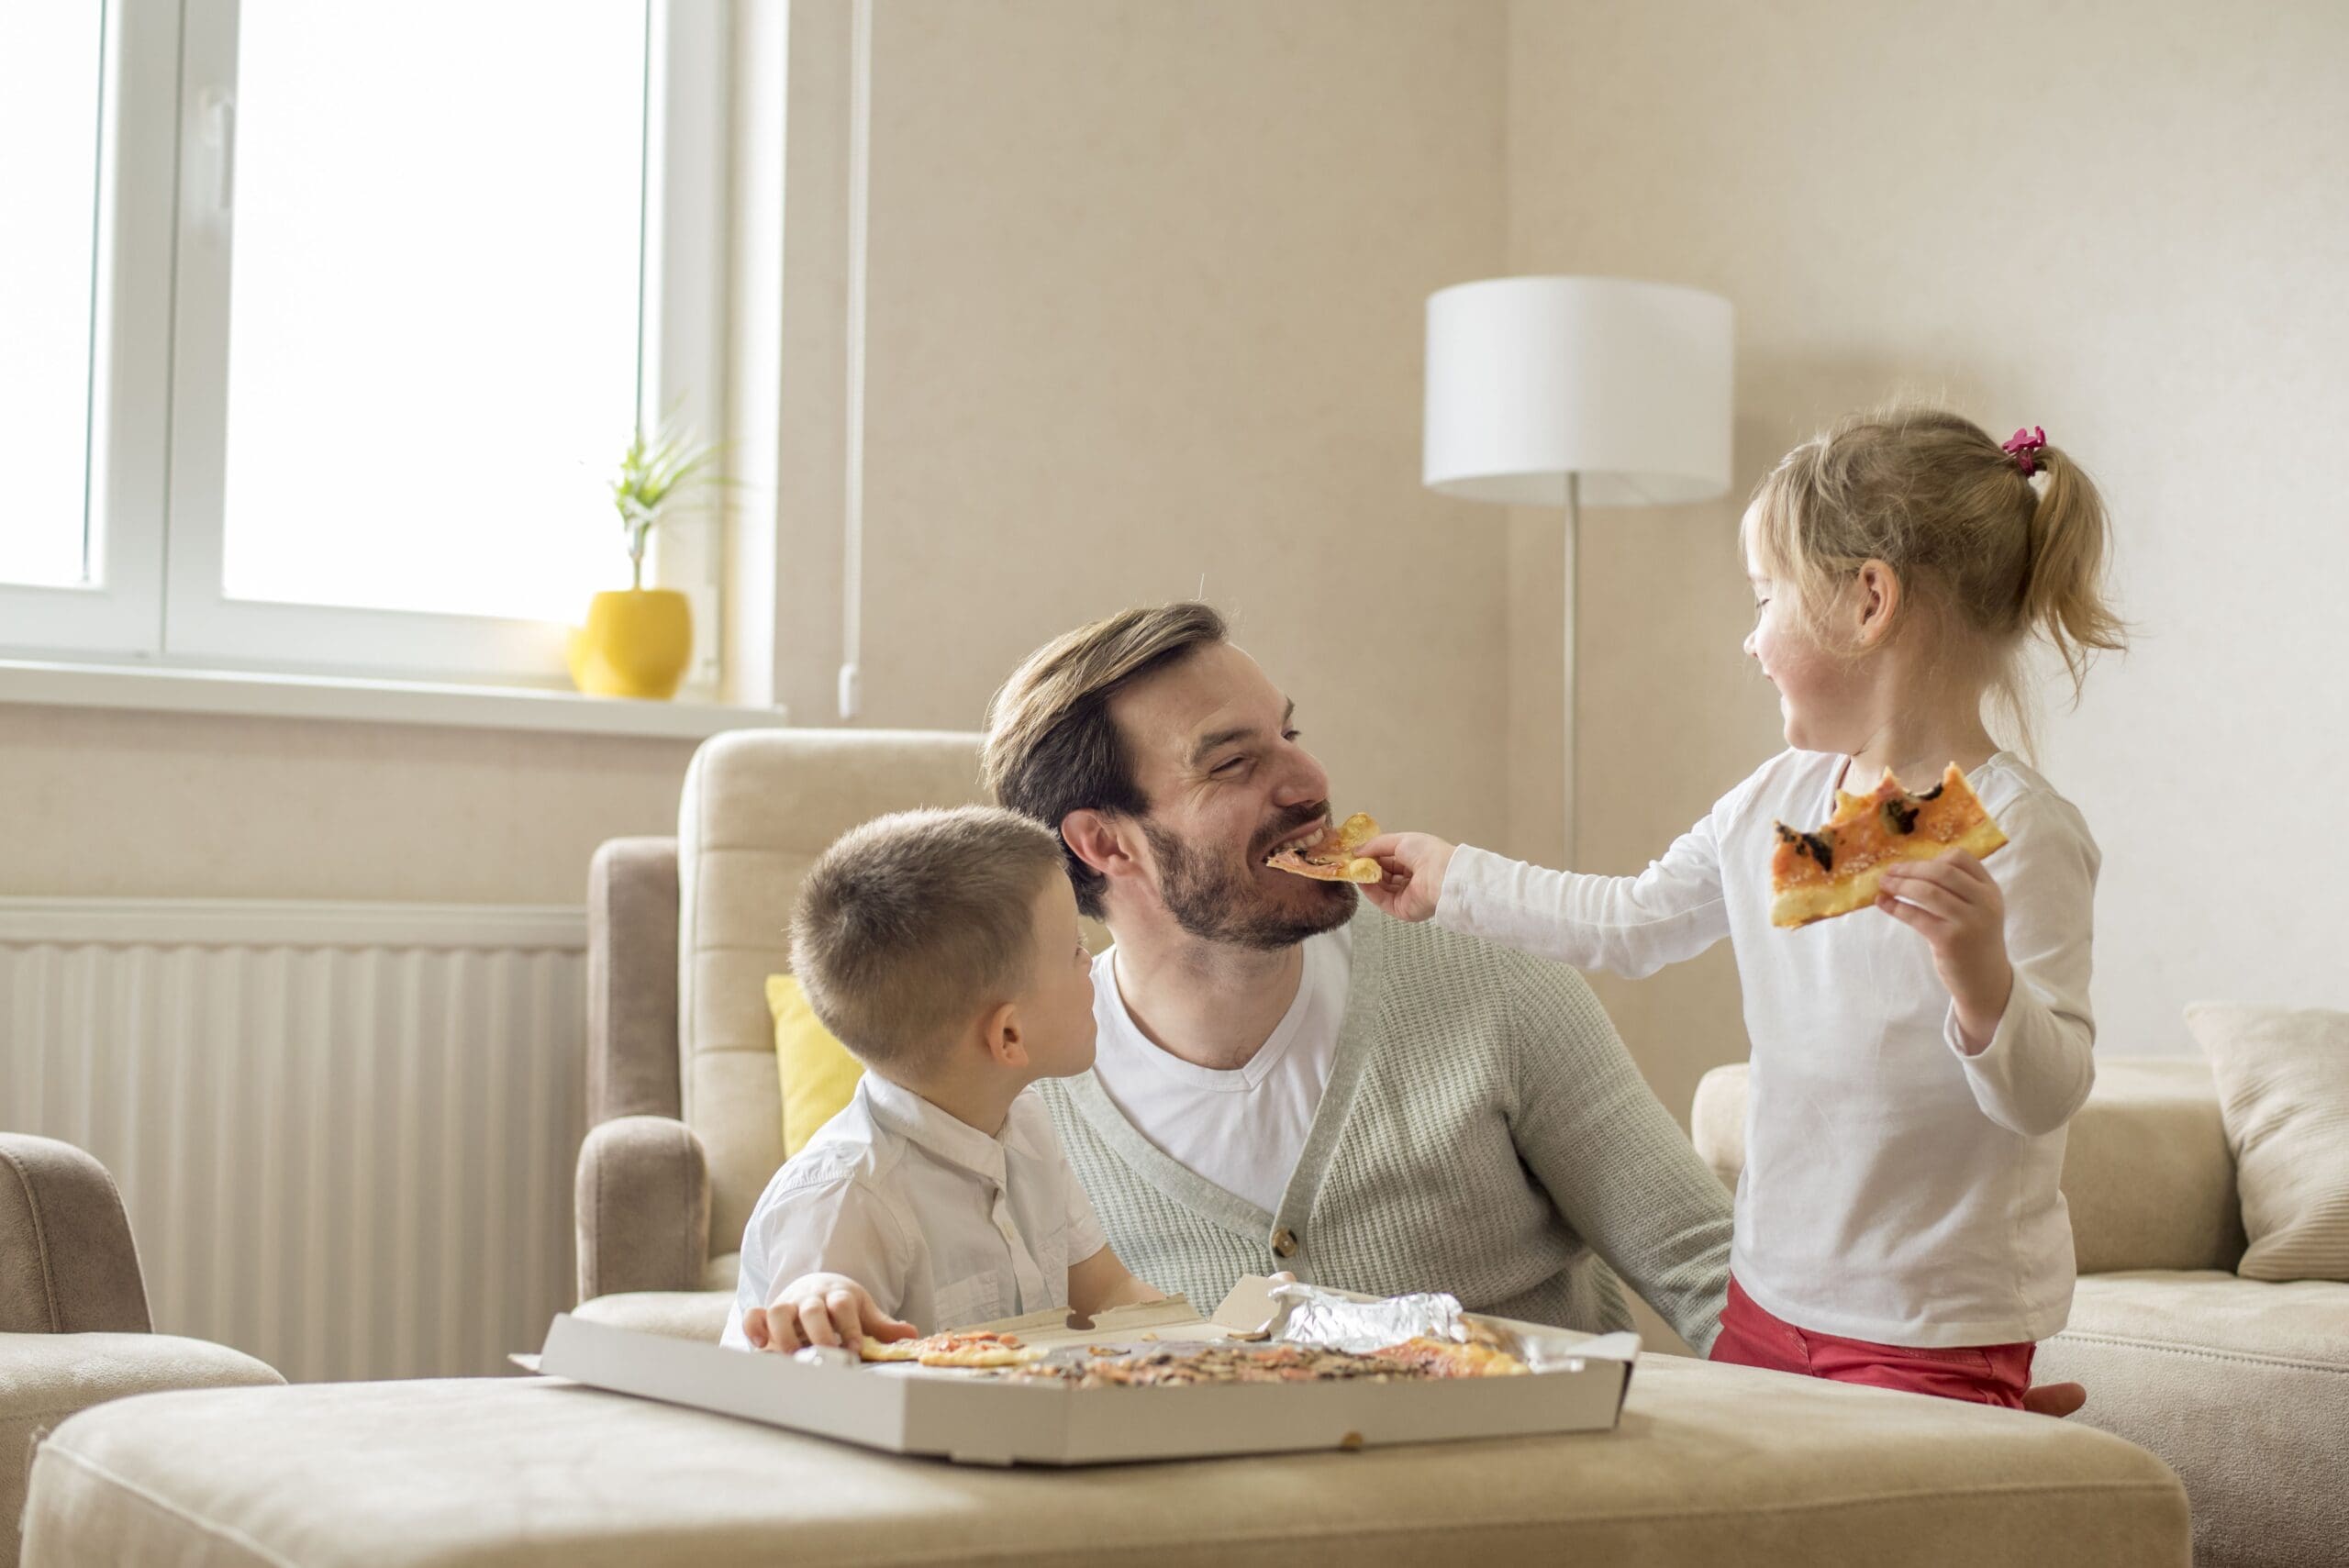 Family bonding over pizza in open floor plan of home